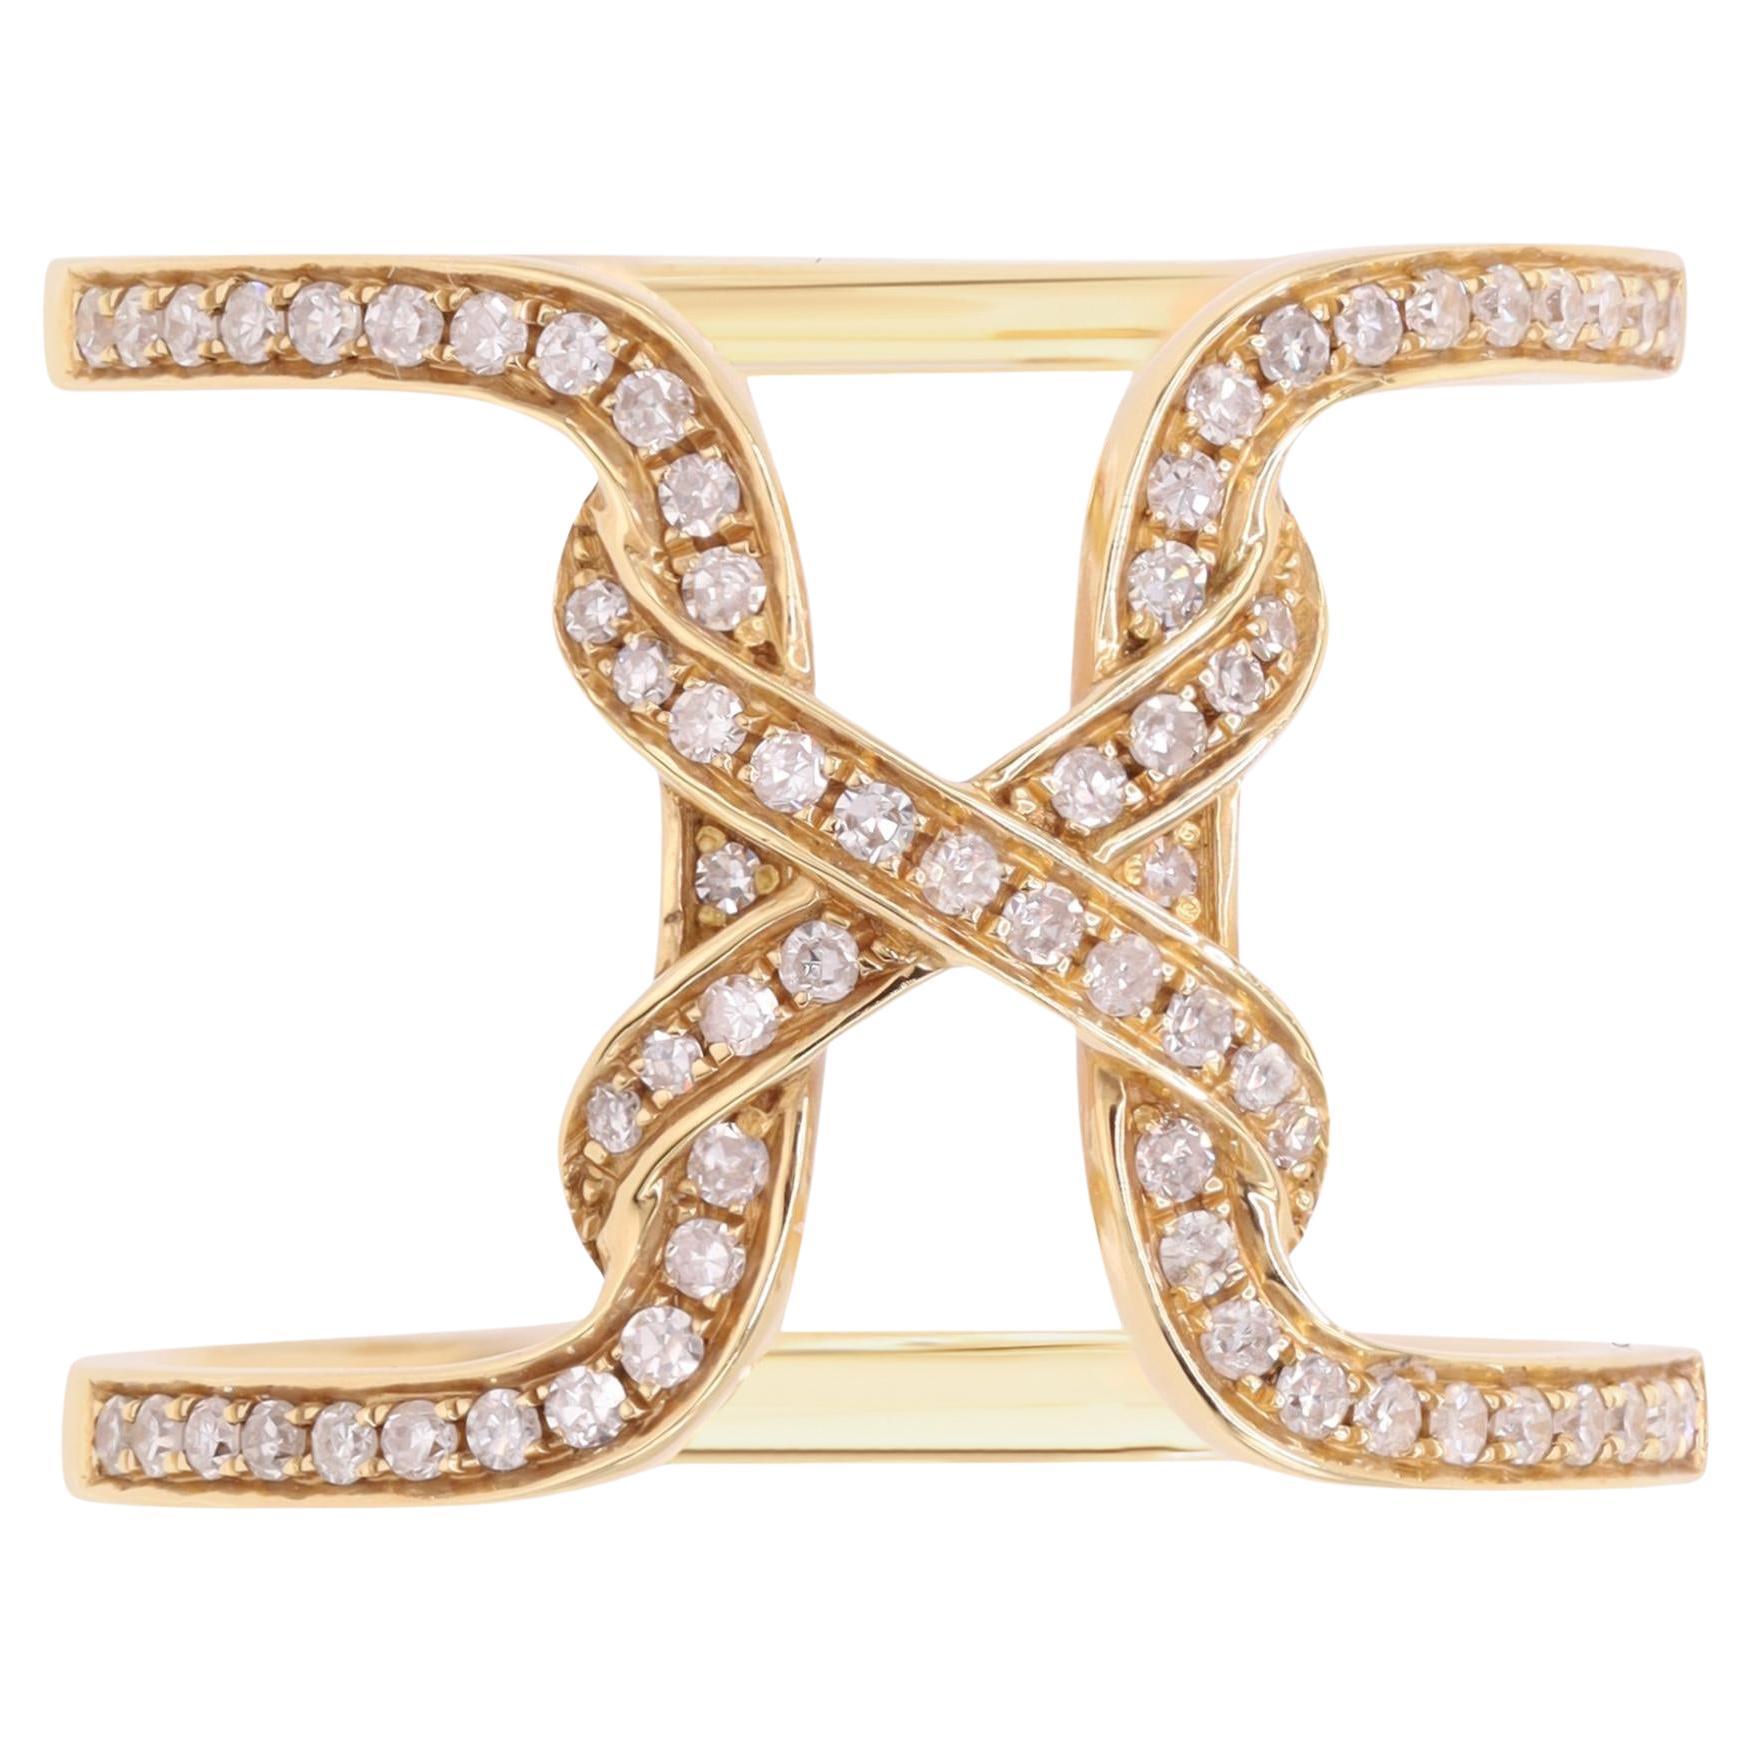 Rachel Koen Bague fantaisie large ouverte et ouverte en or jaune 18 carats avec diamants 0,31 carat poids total